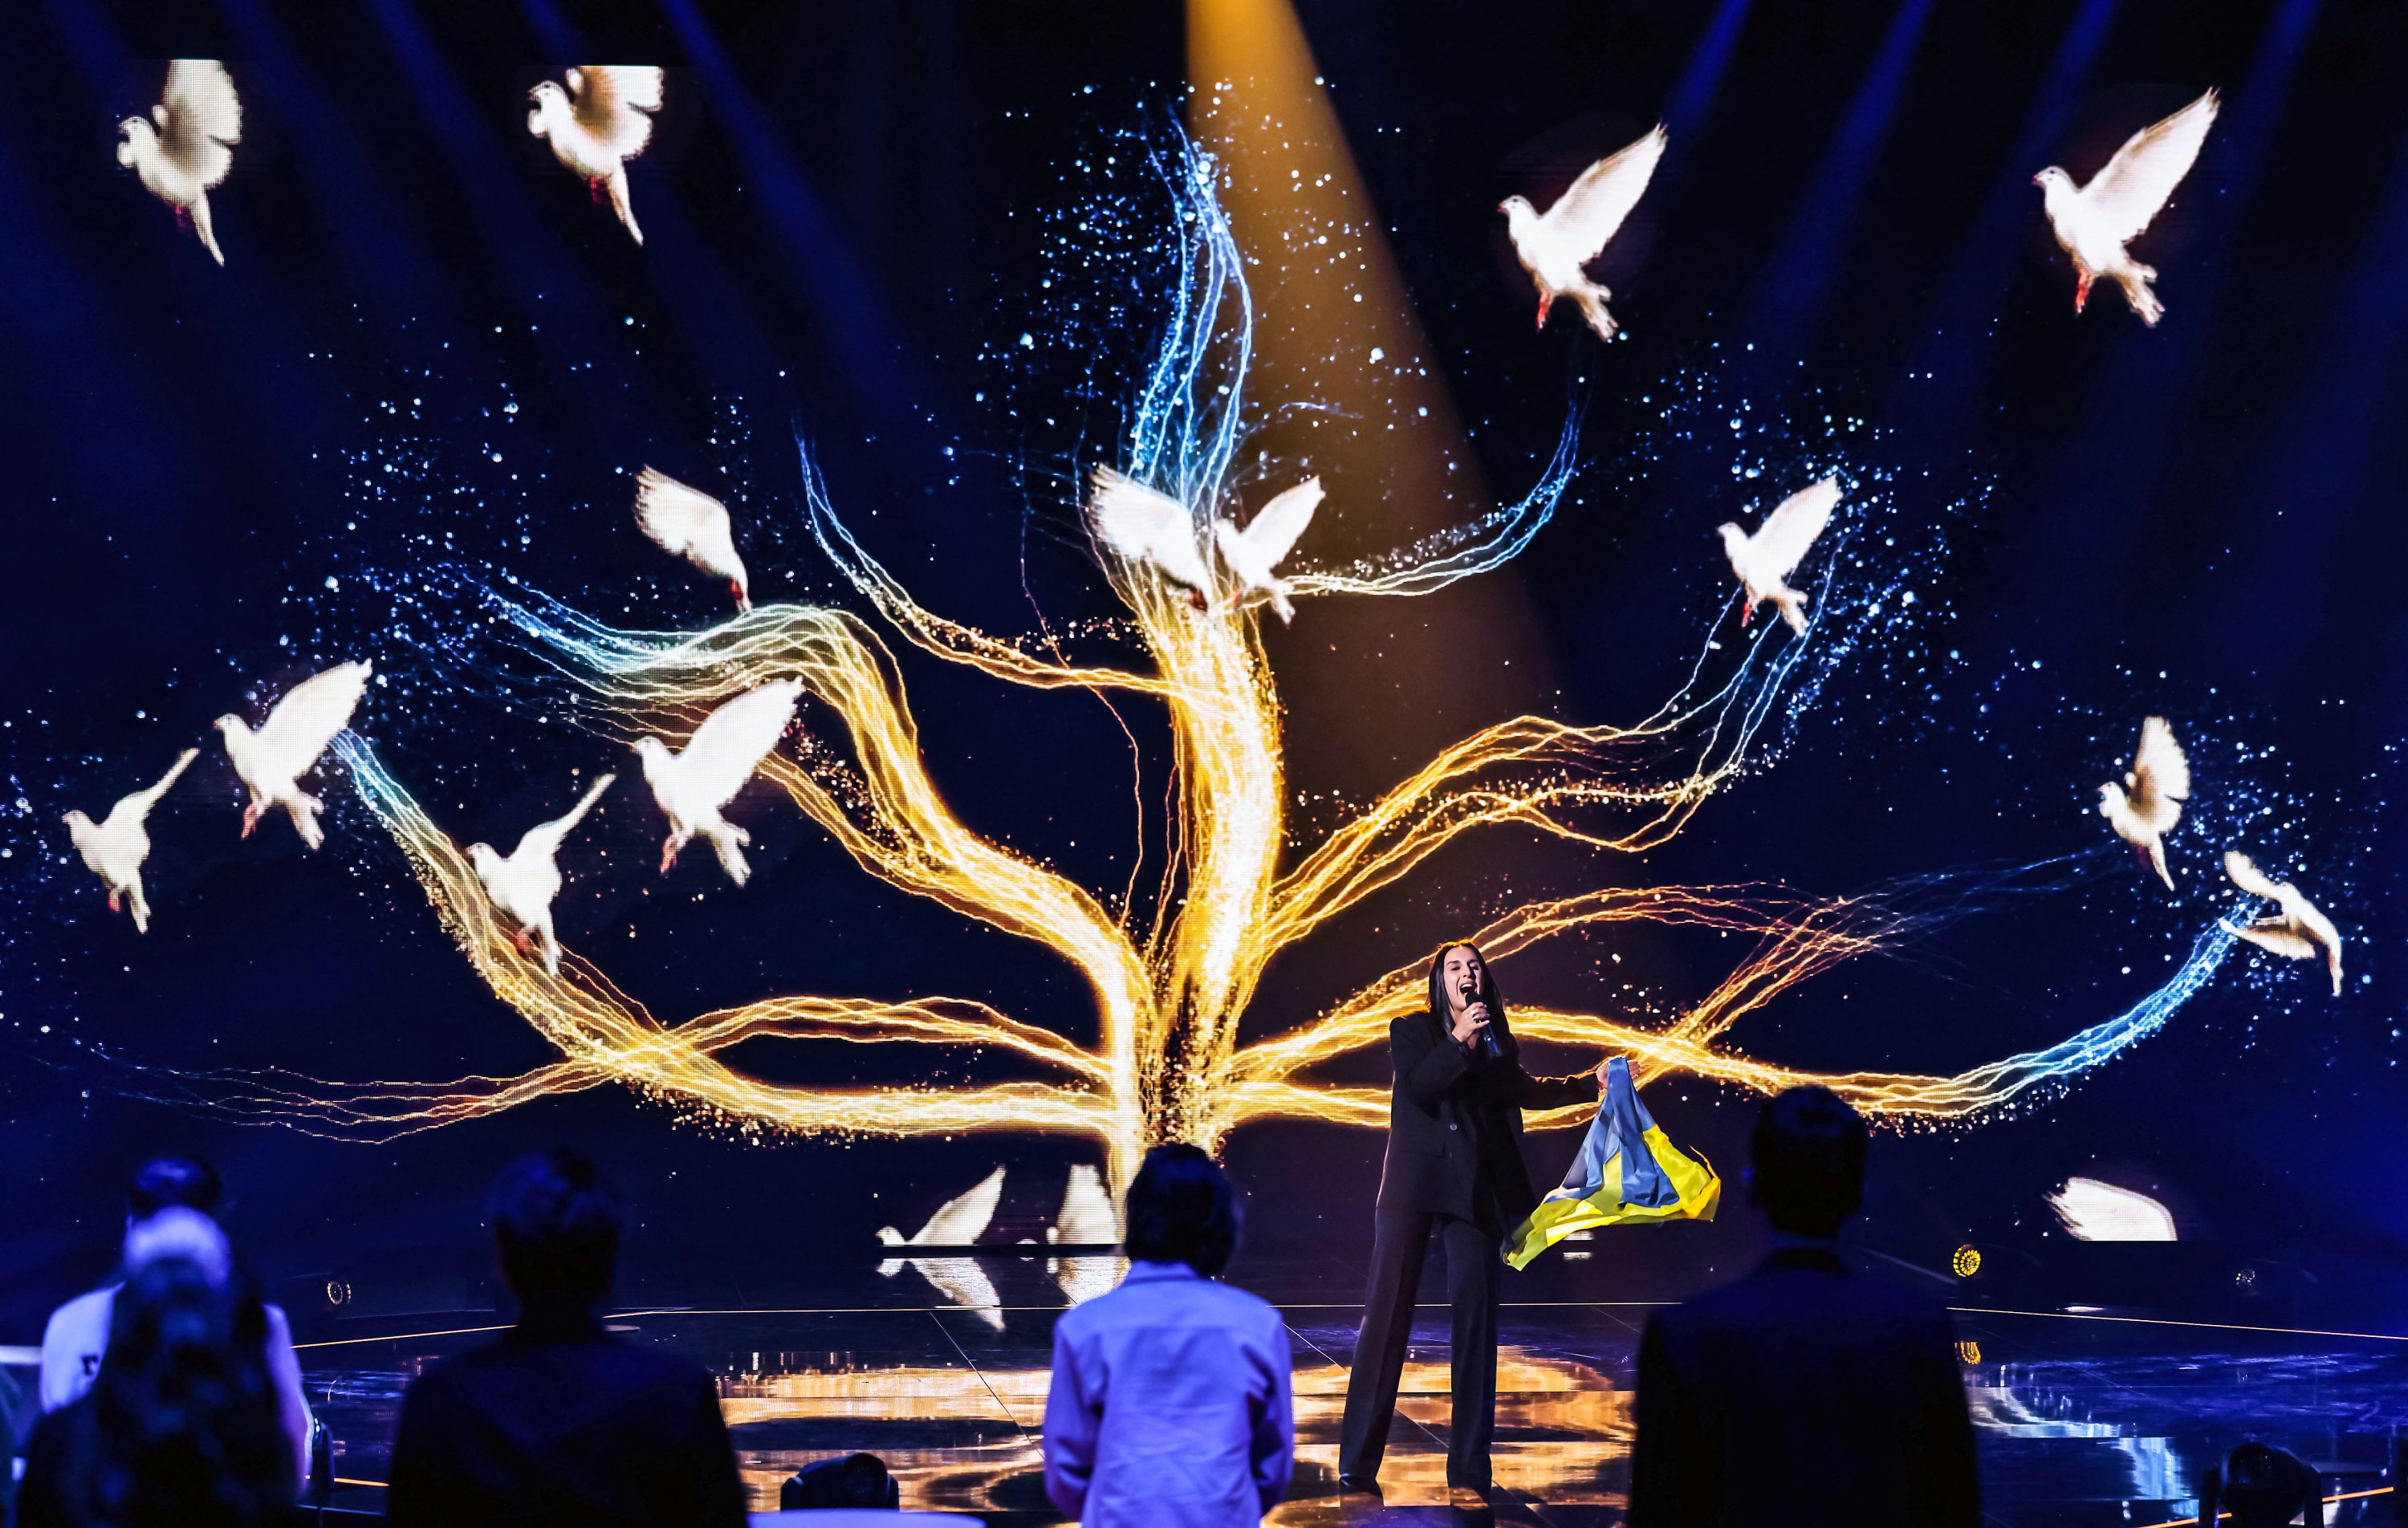 Penyanyi Ukraina Jamala, pemenang Kontes Lagu Eurovision pada tahun 2016 dan yang melarikan diri dari perang di negaranya, membawakan lagunya yang saat itu menjadi pemenang '1944' di 'Jerman 12 Poin,' babak penyisihan Jerman Kontes Lagu Eurovision, di Berlin, Jerman, 4 Maret 2022. (REUTERS)